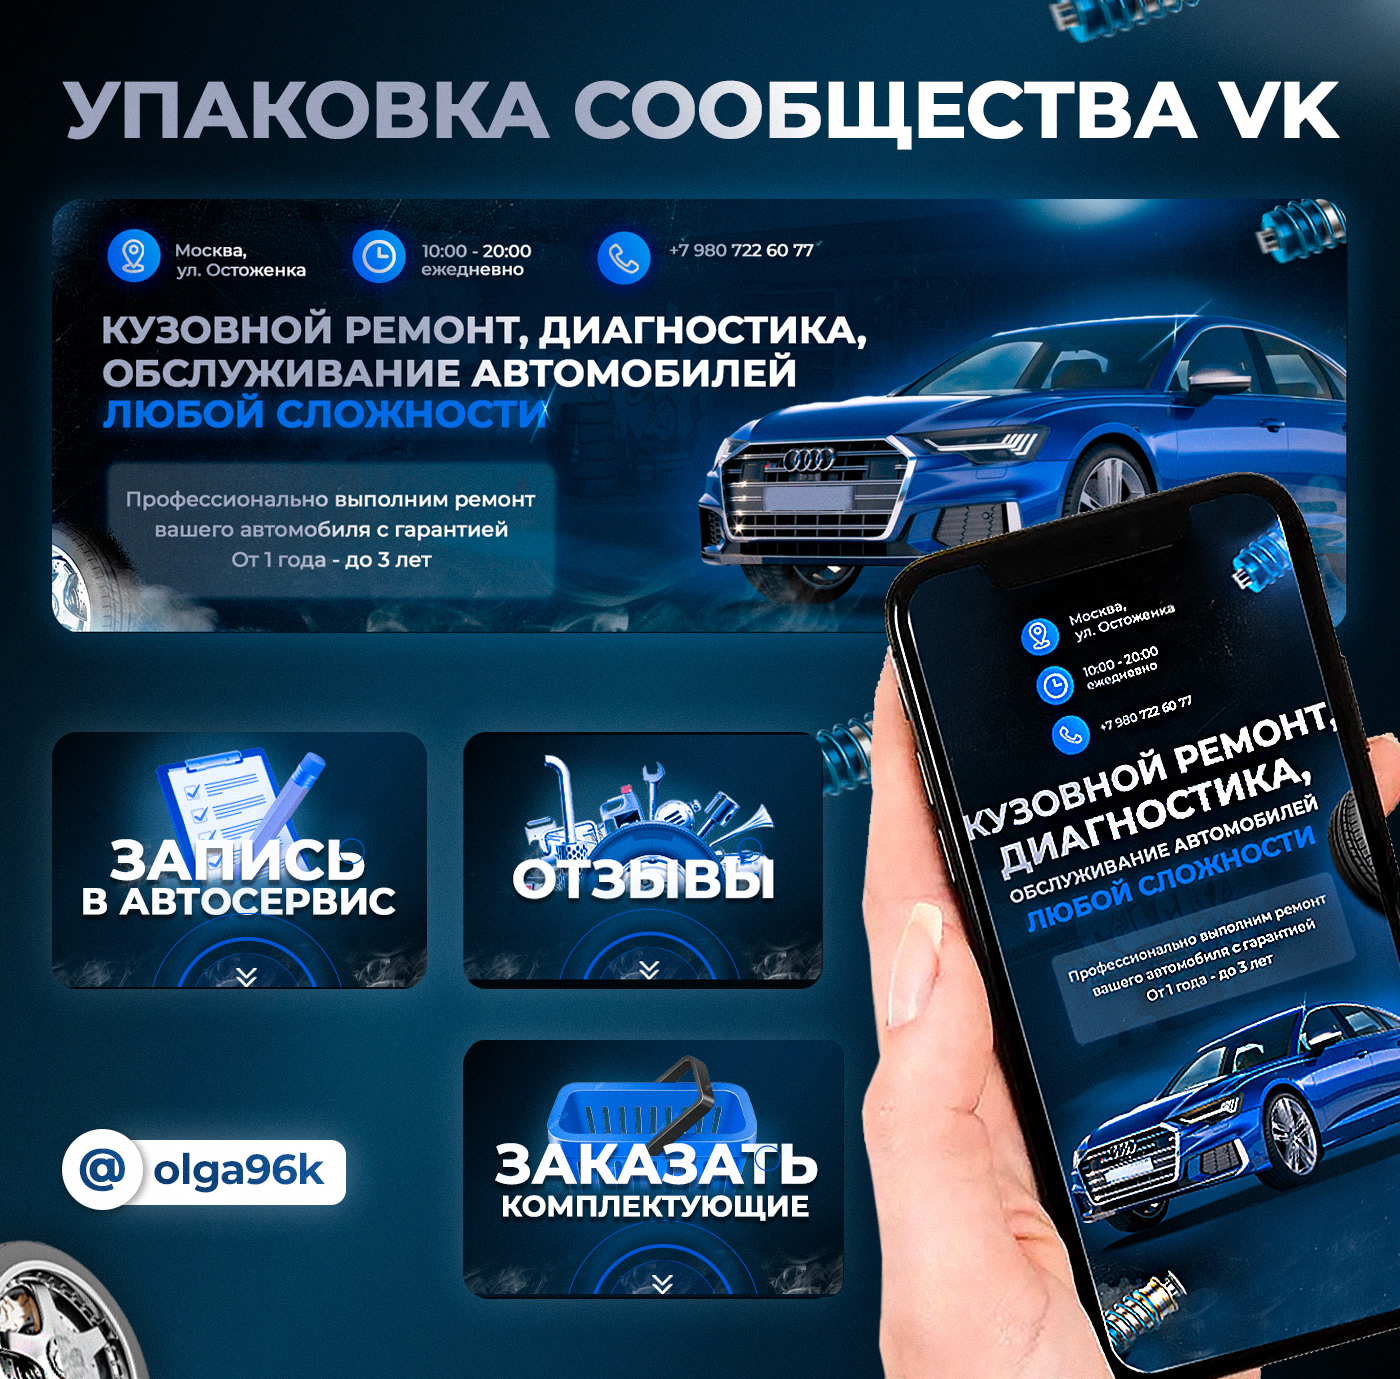 VK vkontakte Автосервис вк вконтакте вконтакте дизайн вконтакте оформление дизайн группы вконтакте Оформление вк социальные сети